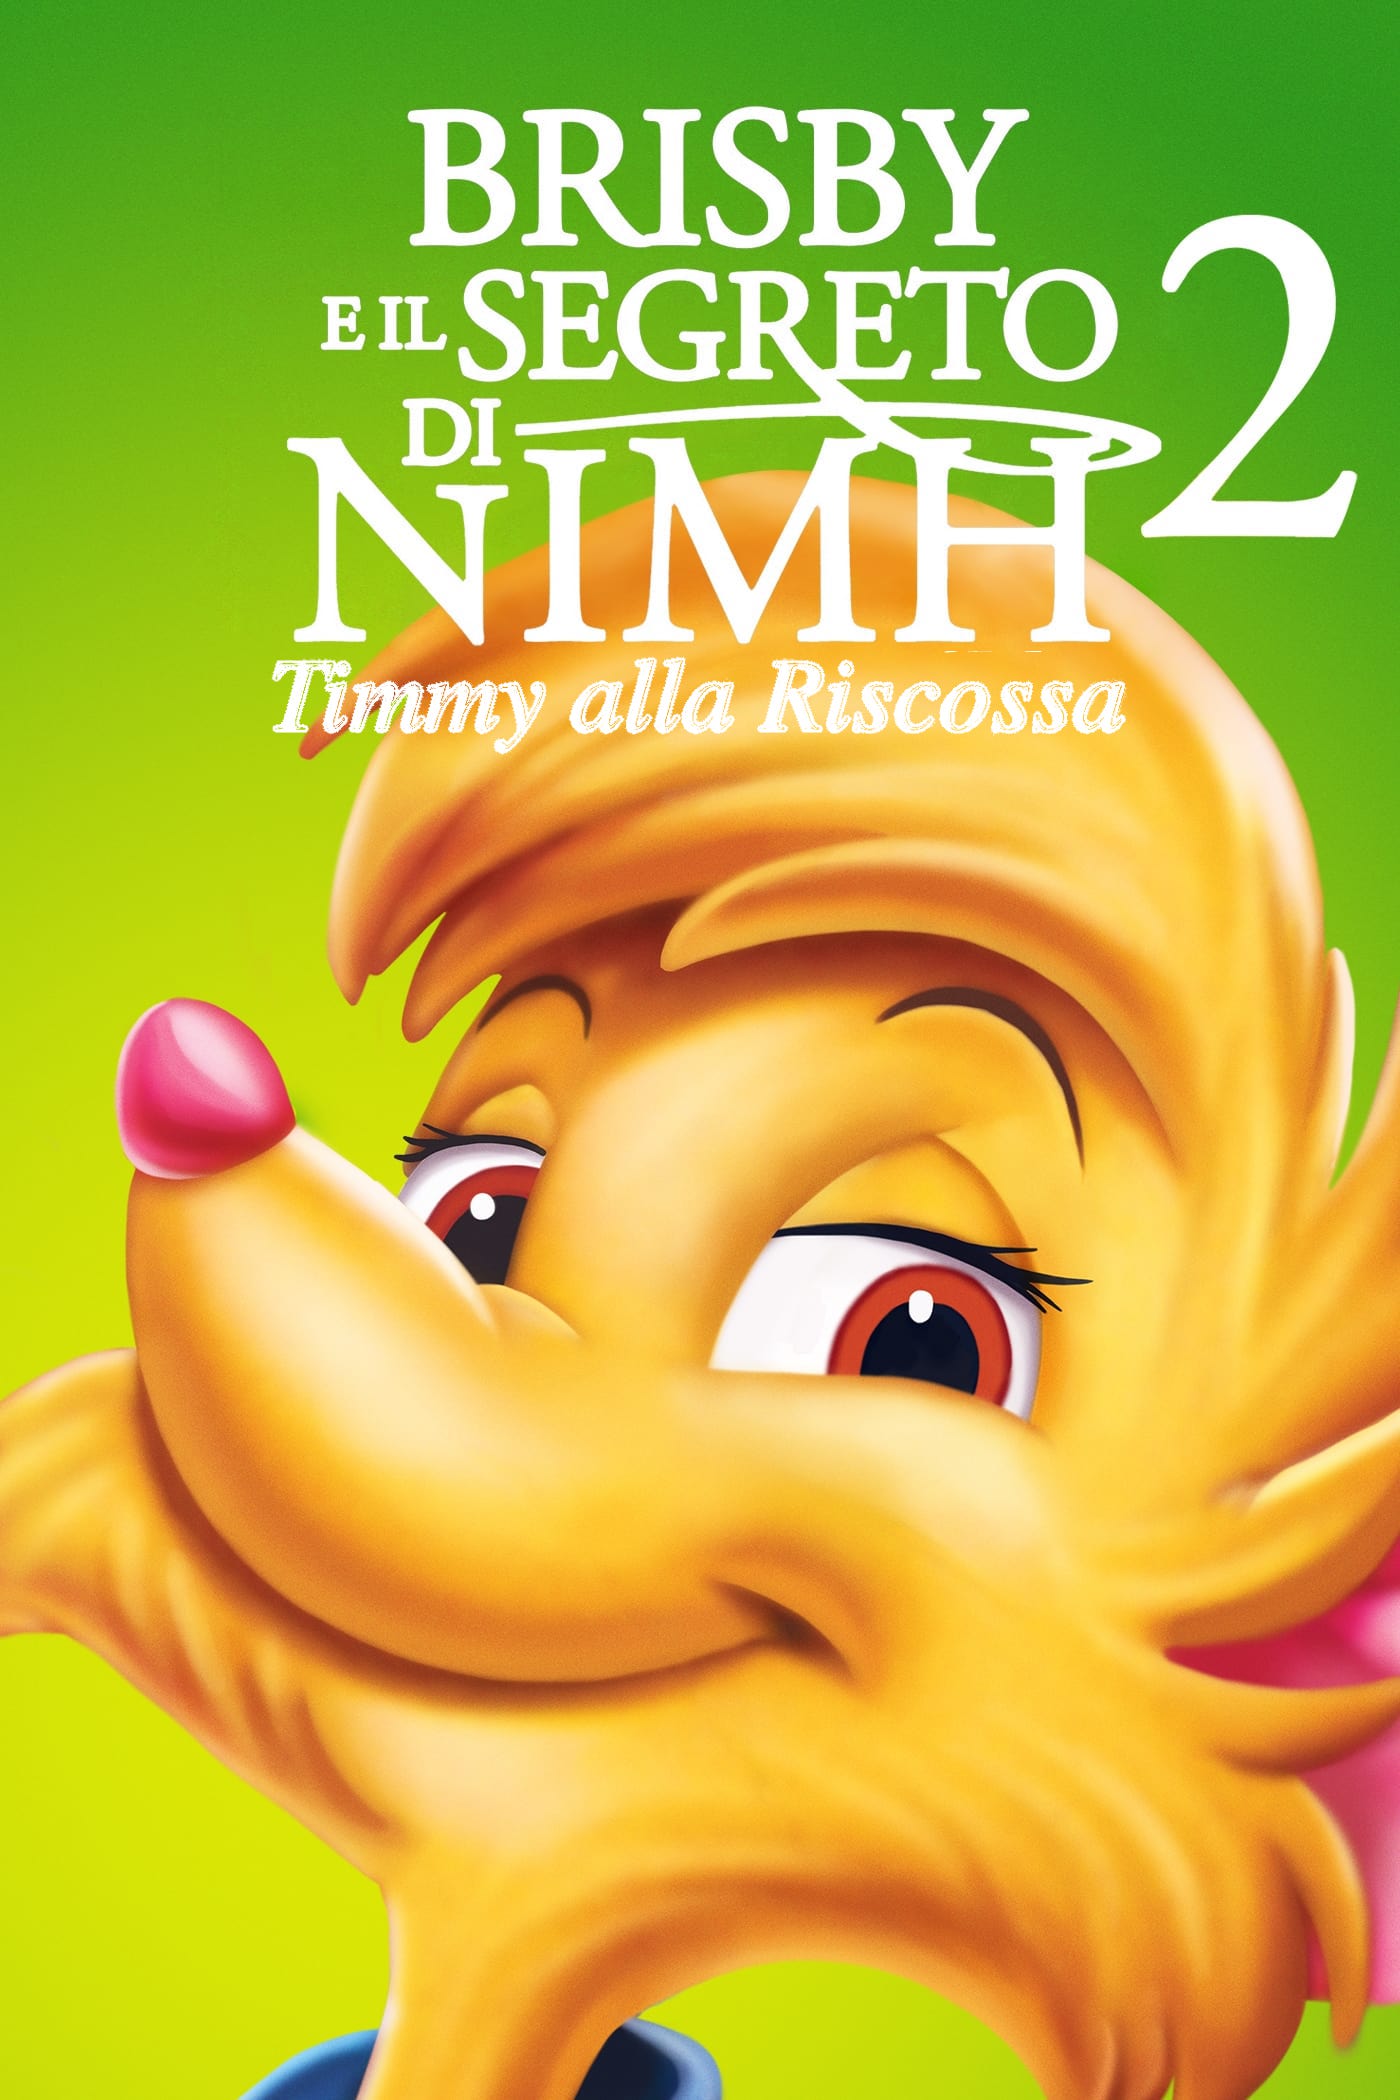 Brisby e il segreto di NIMH 2 – Timmy alla riscossa (1998)